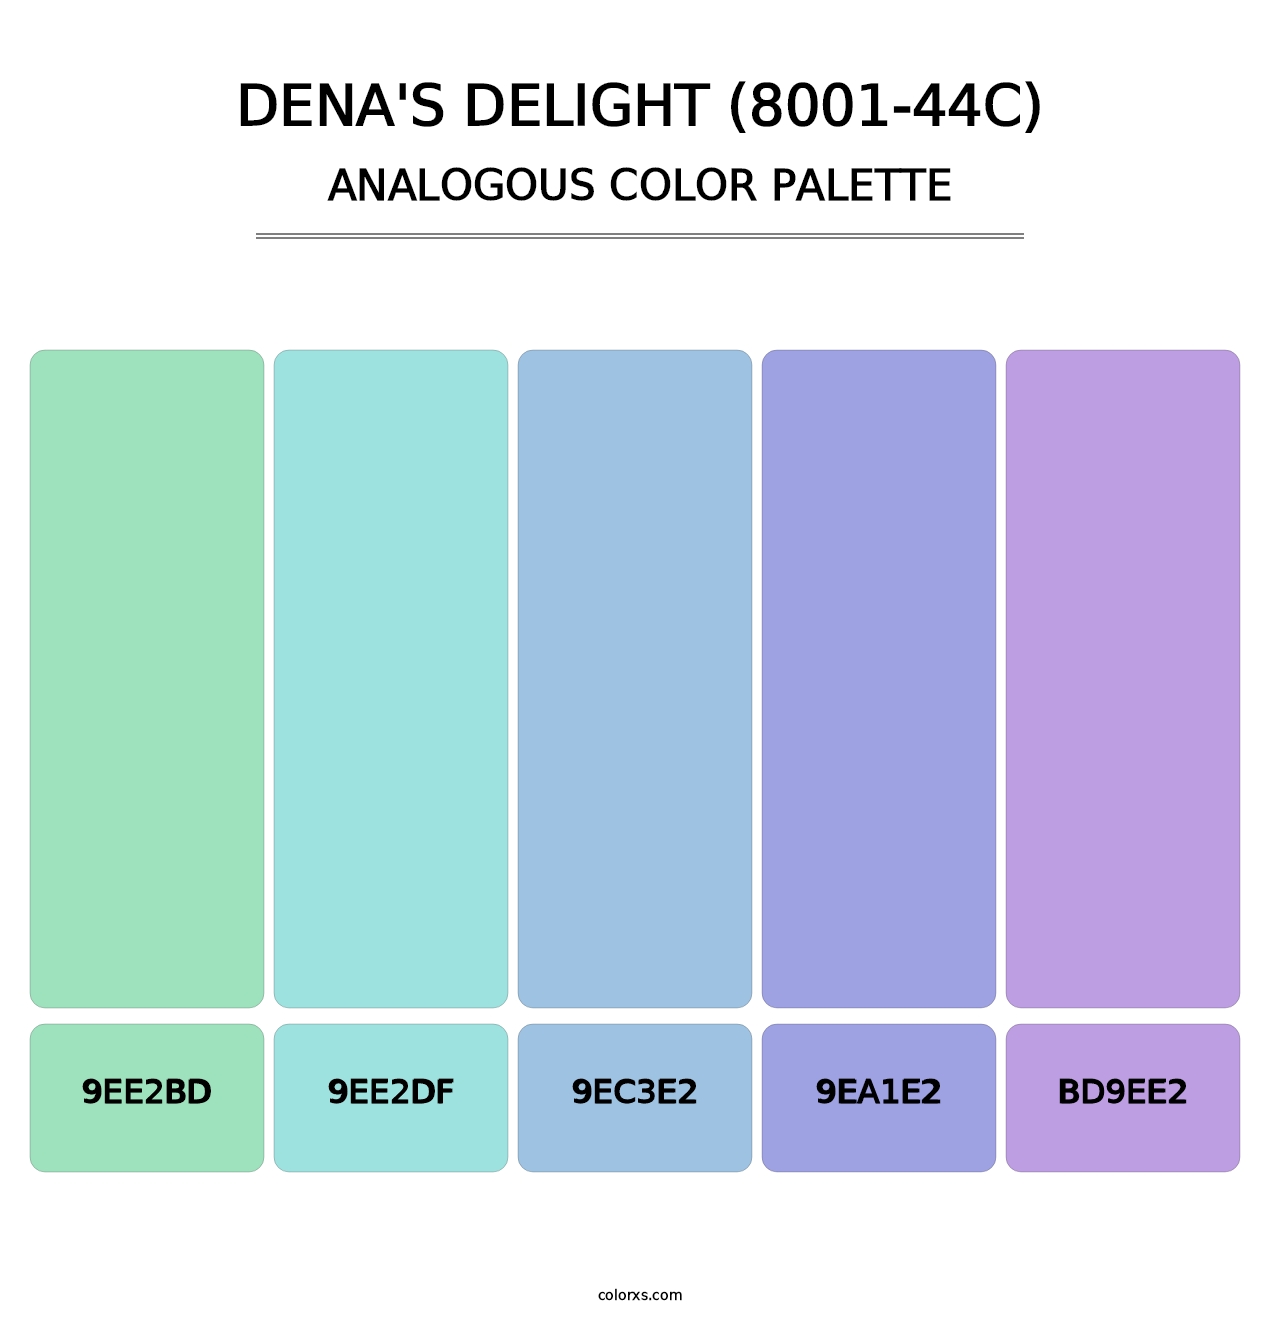 Dena's Delight (8001-44C) - Analogous Color Palette